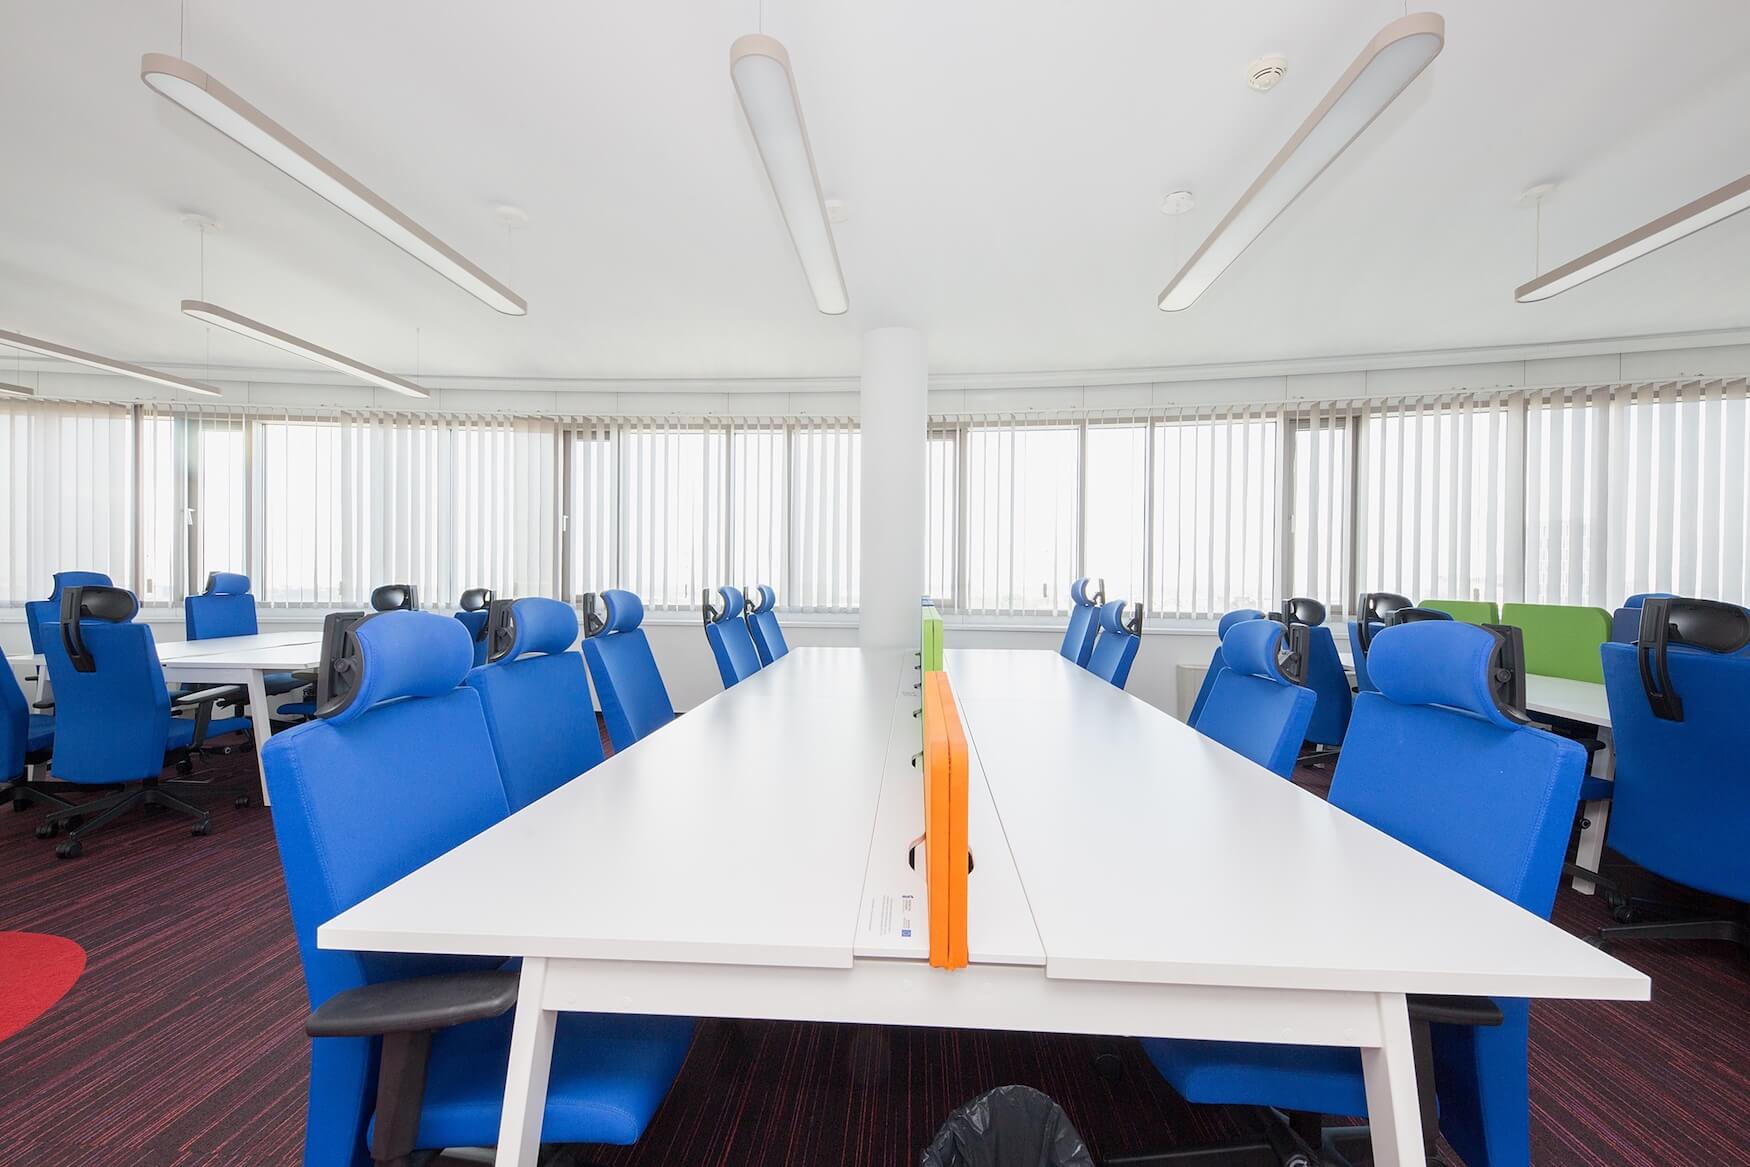 Biuro dla 28 os. w Zebra White beIN Offices powered by BiznesHub